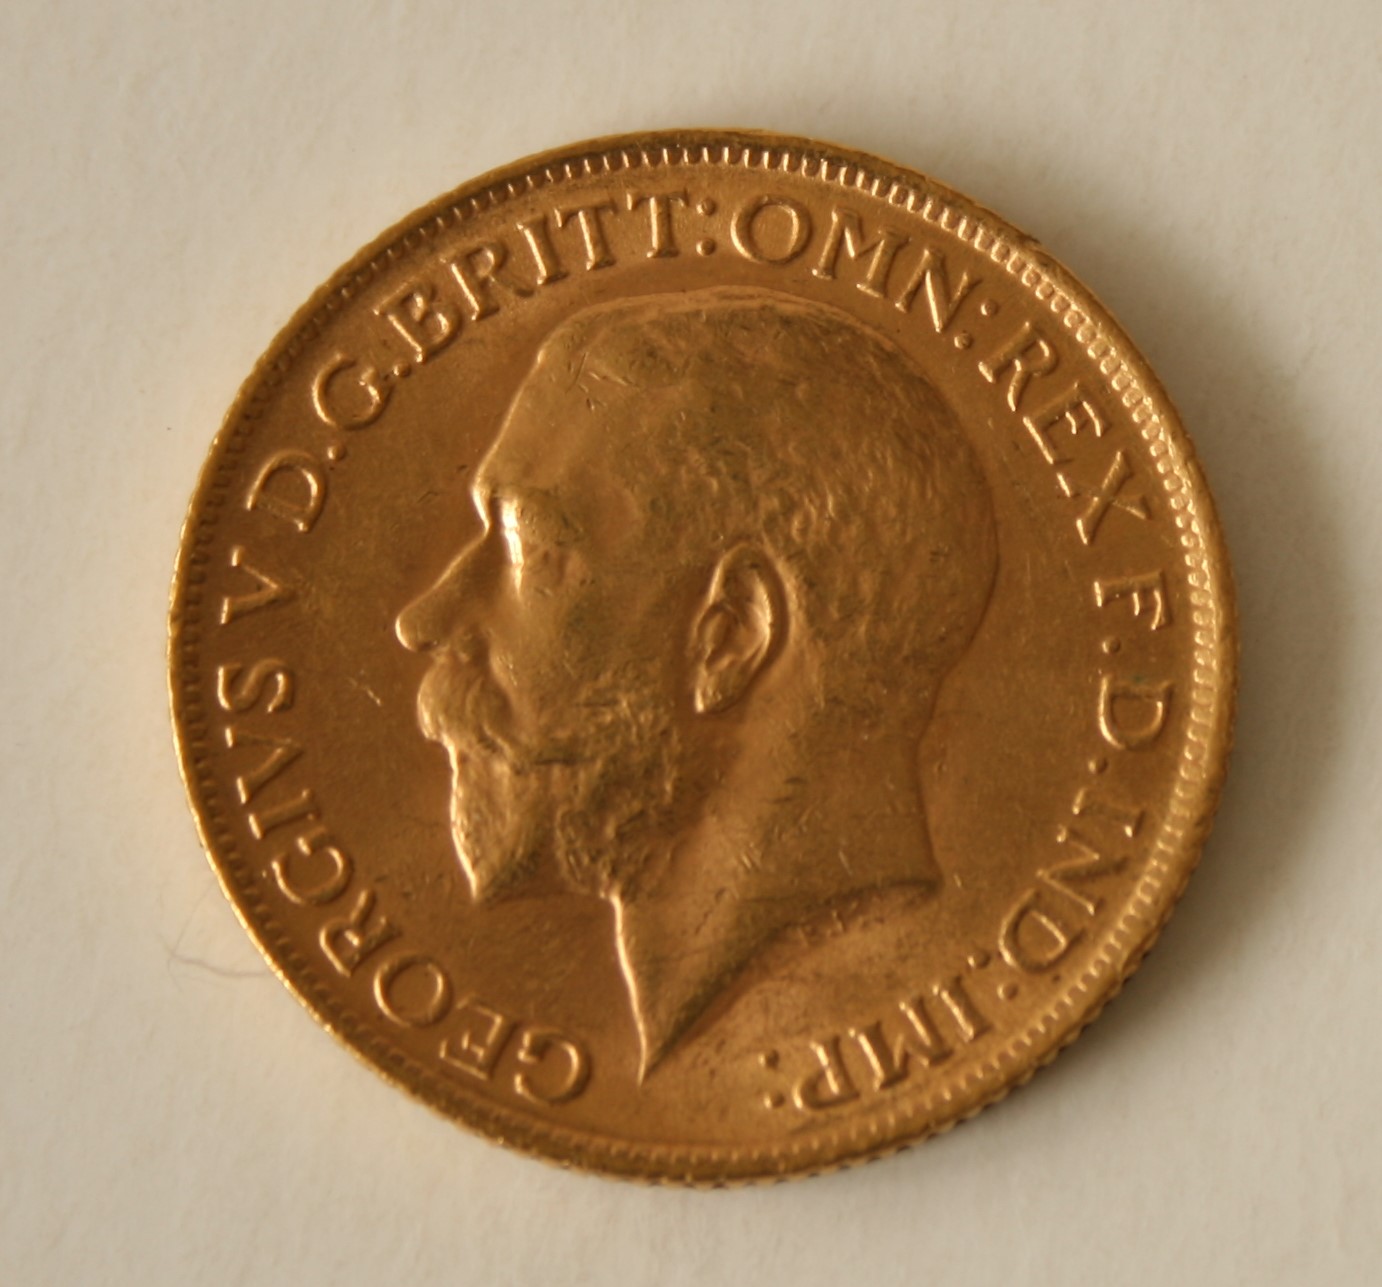 Piece Or GEORGIVS V, UK, 1914 - Poids : 8 g - GEORGIVS V, UK, 1914, gold coin - [...]